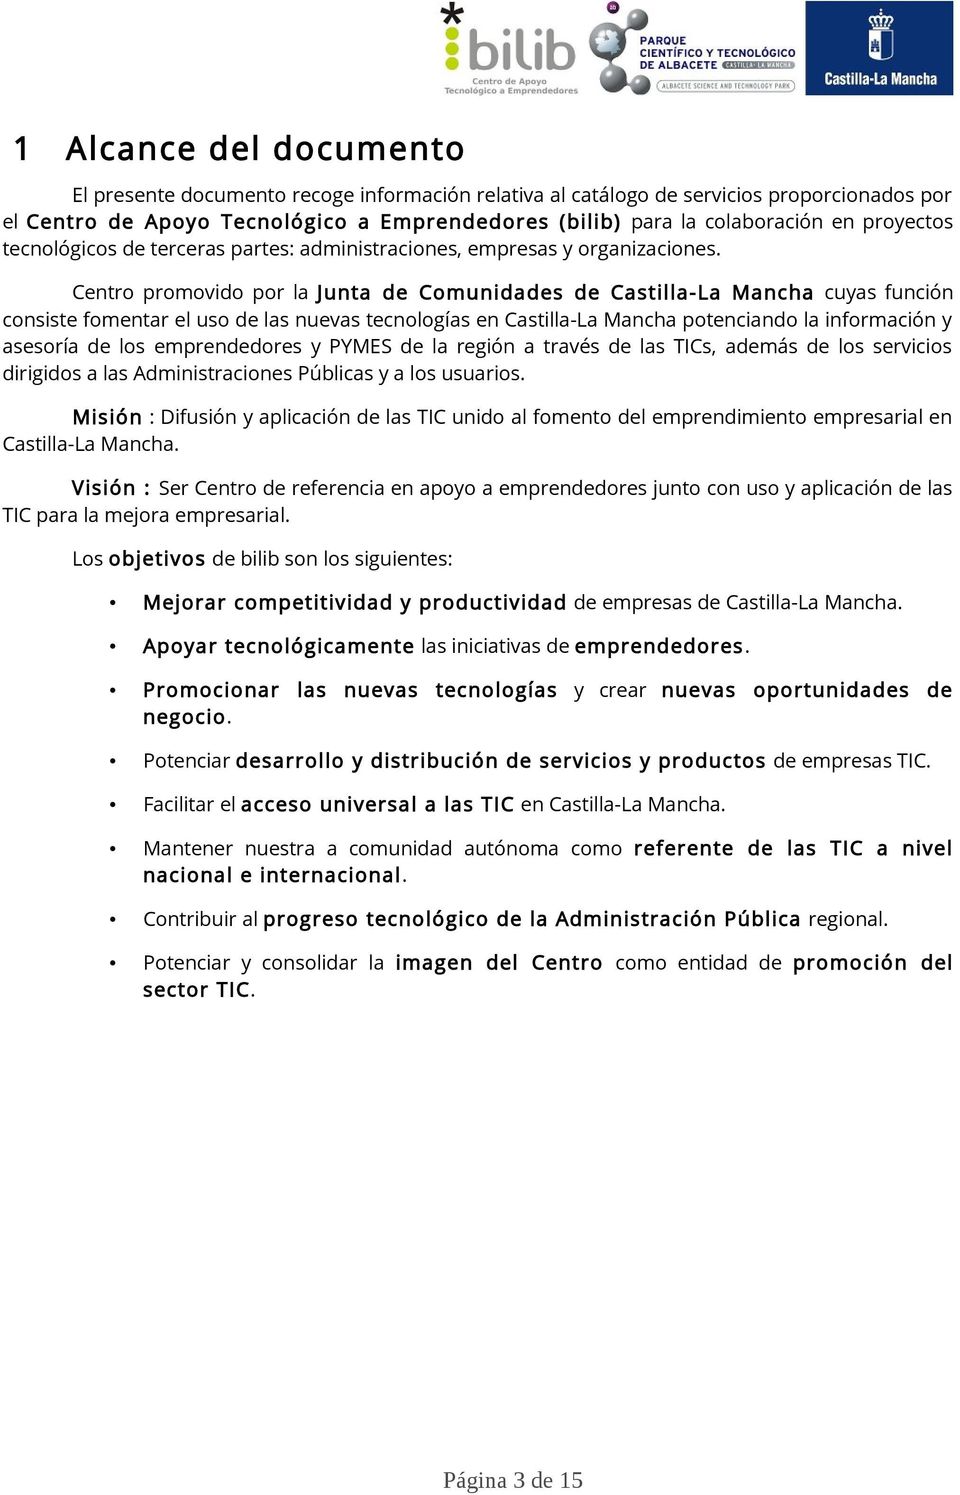 Centro promovido por la Junta de Comunidades de Castilla-La Mancha cuyas función consiste fomentar el uso de las nuevas tecnologías en Castilla-La Mancha potenciando la información y asesoría de los